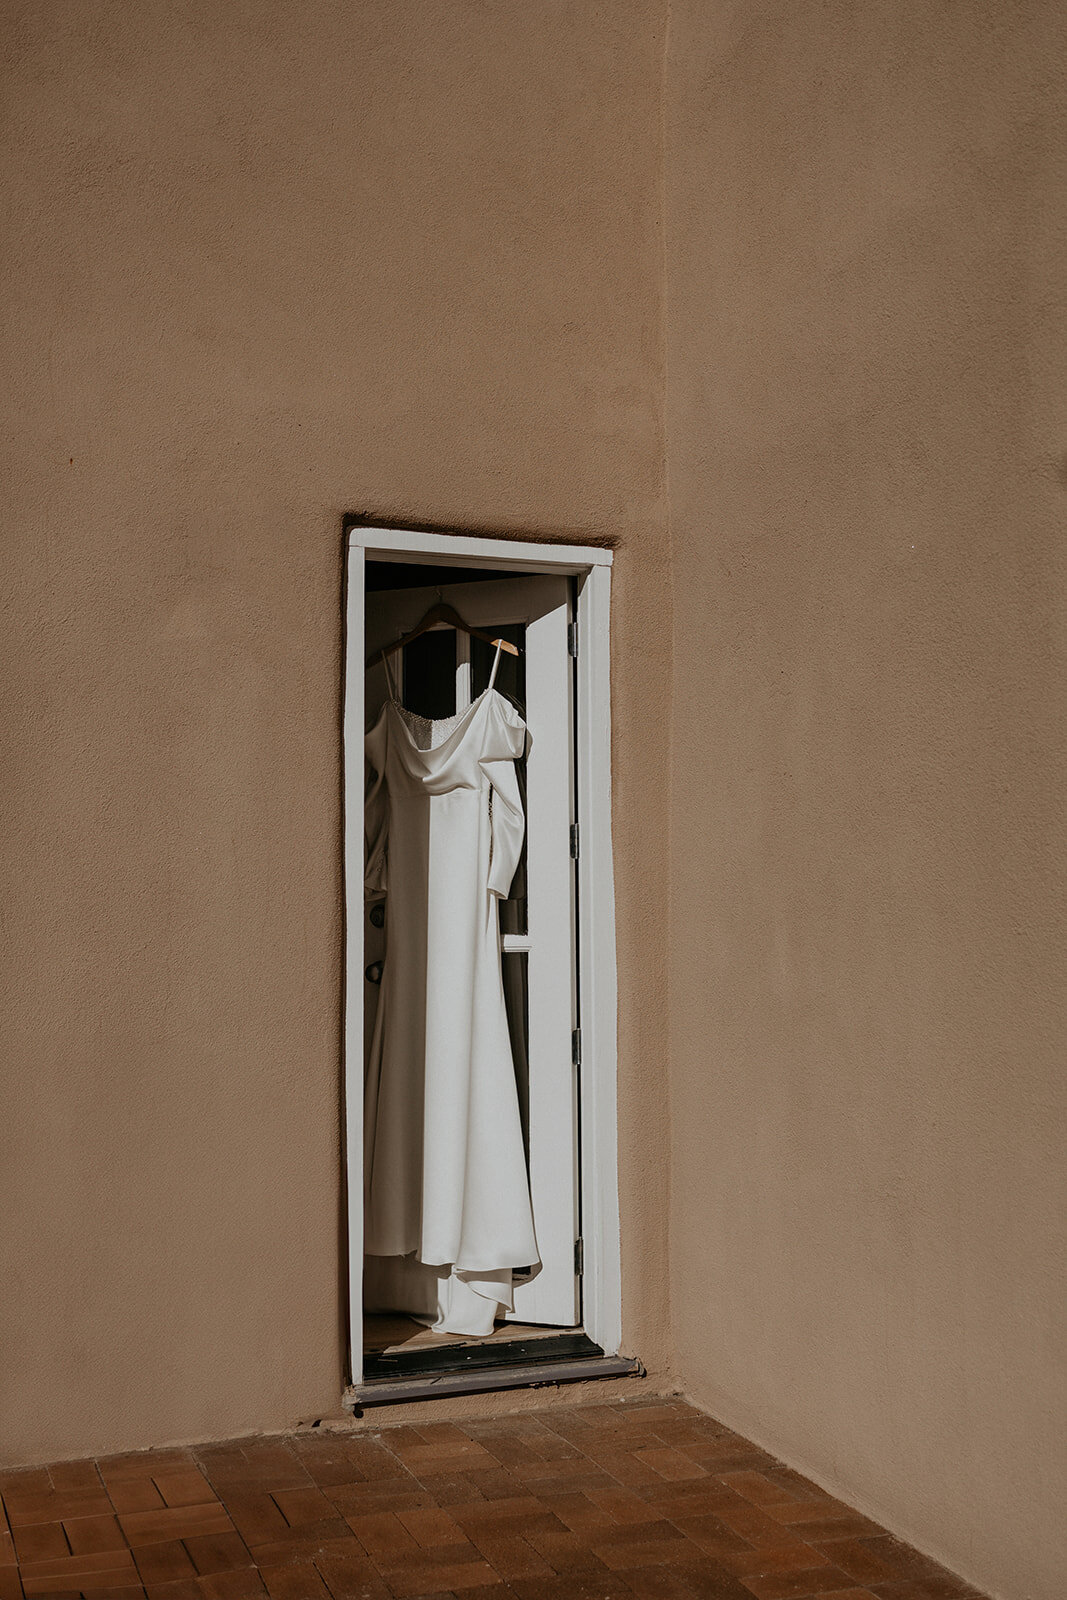 brides dress hanging in a doorway